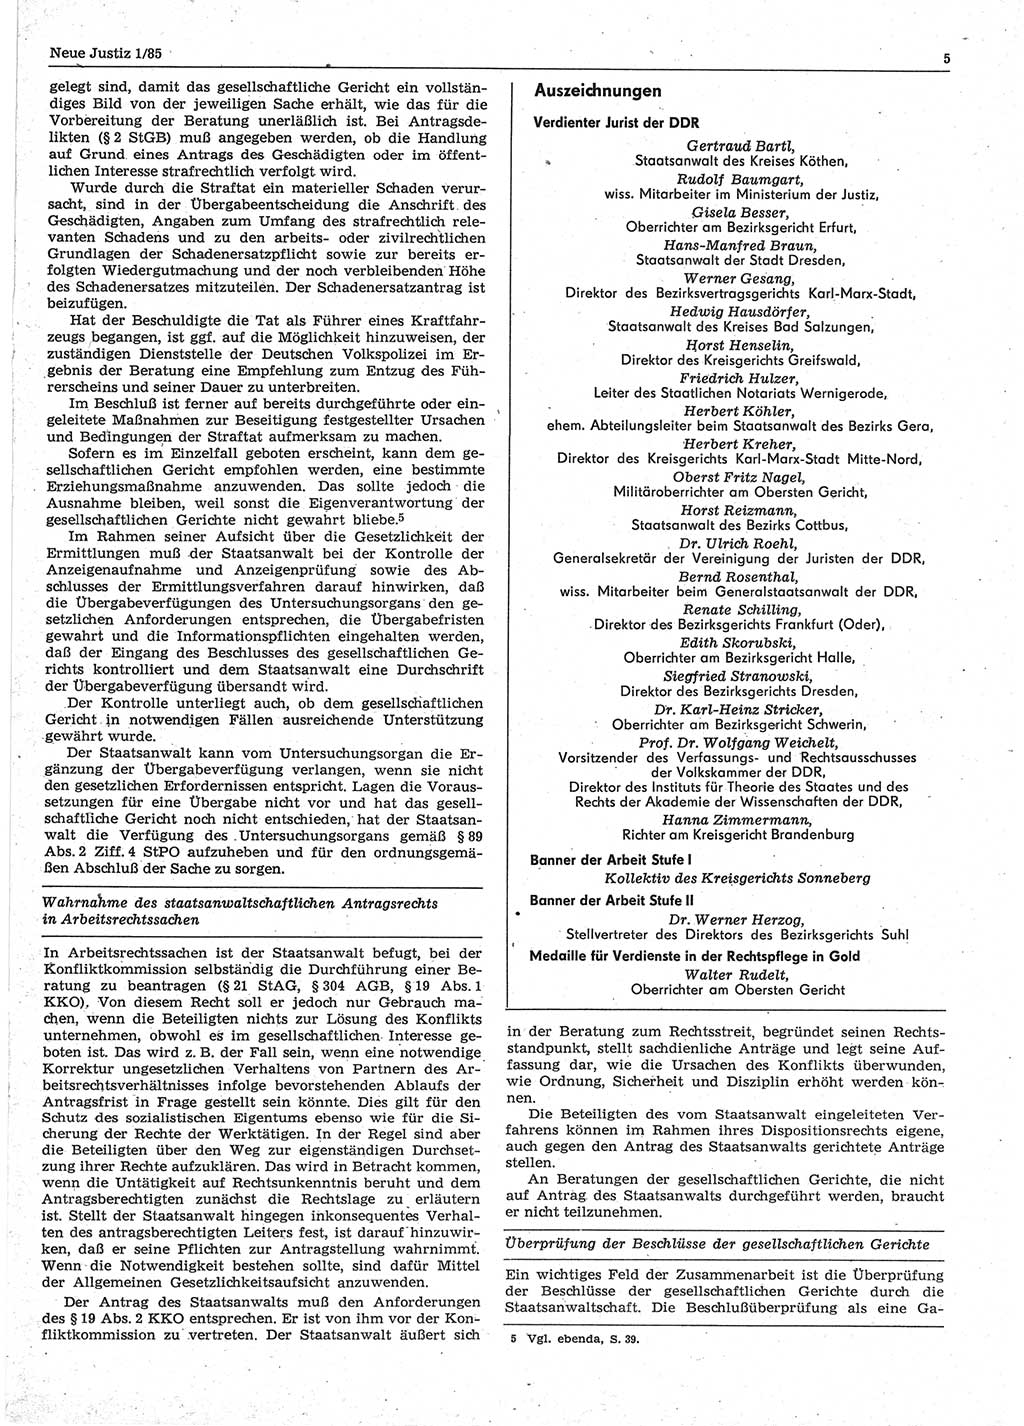 Neue Justiz (NJ), Zeitschrift für sozialistisches Recht und Gesetzlichkeit [Deutsche Demokratische Republik (DDR)], 39. Jahrgang 1985, Seite 5 (NJ DDR 1985, S. 5)